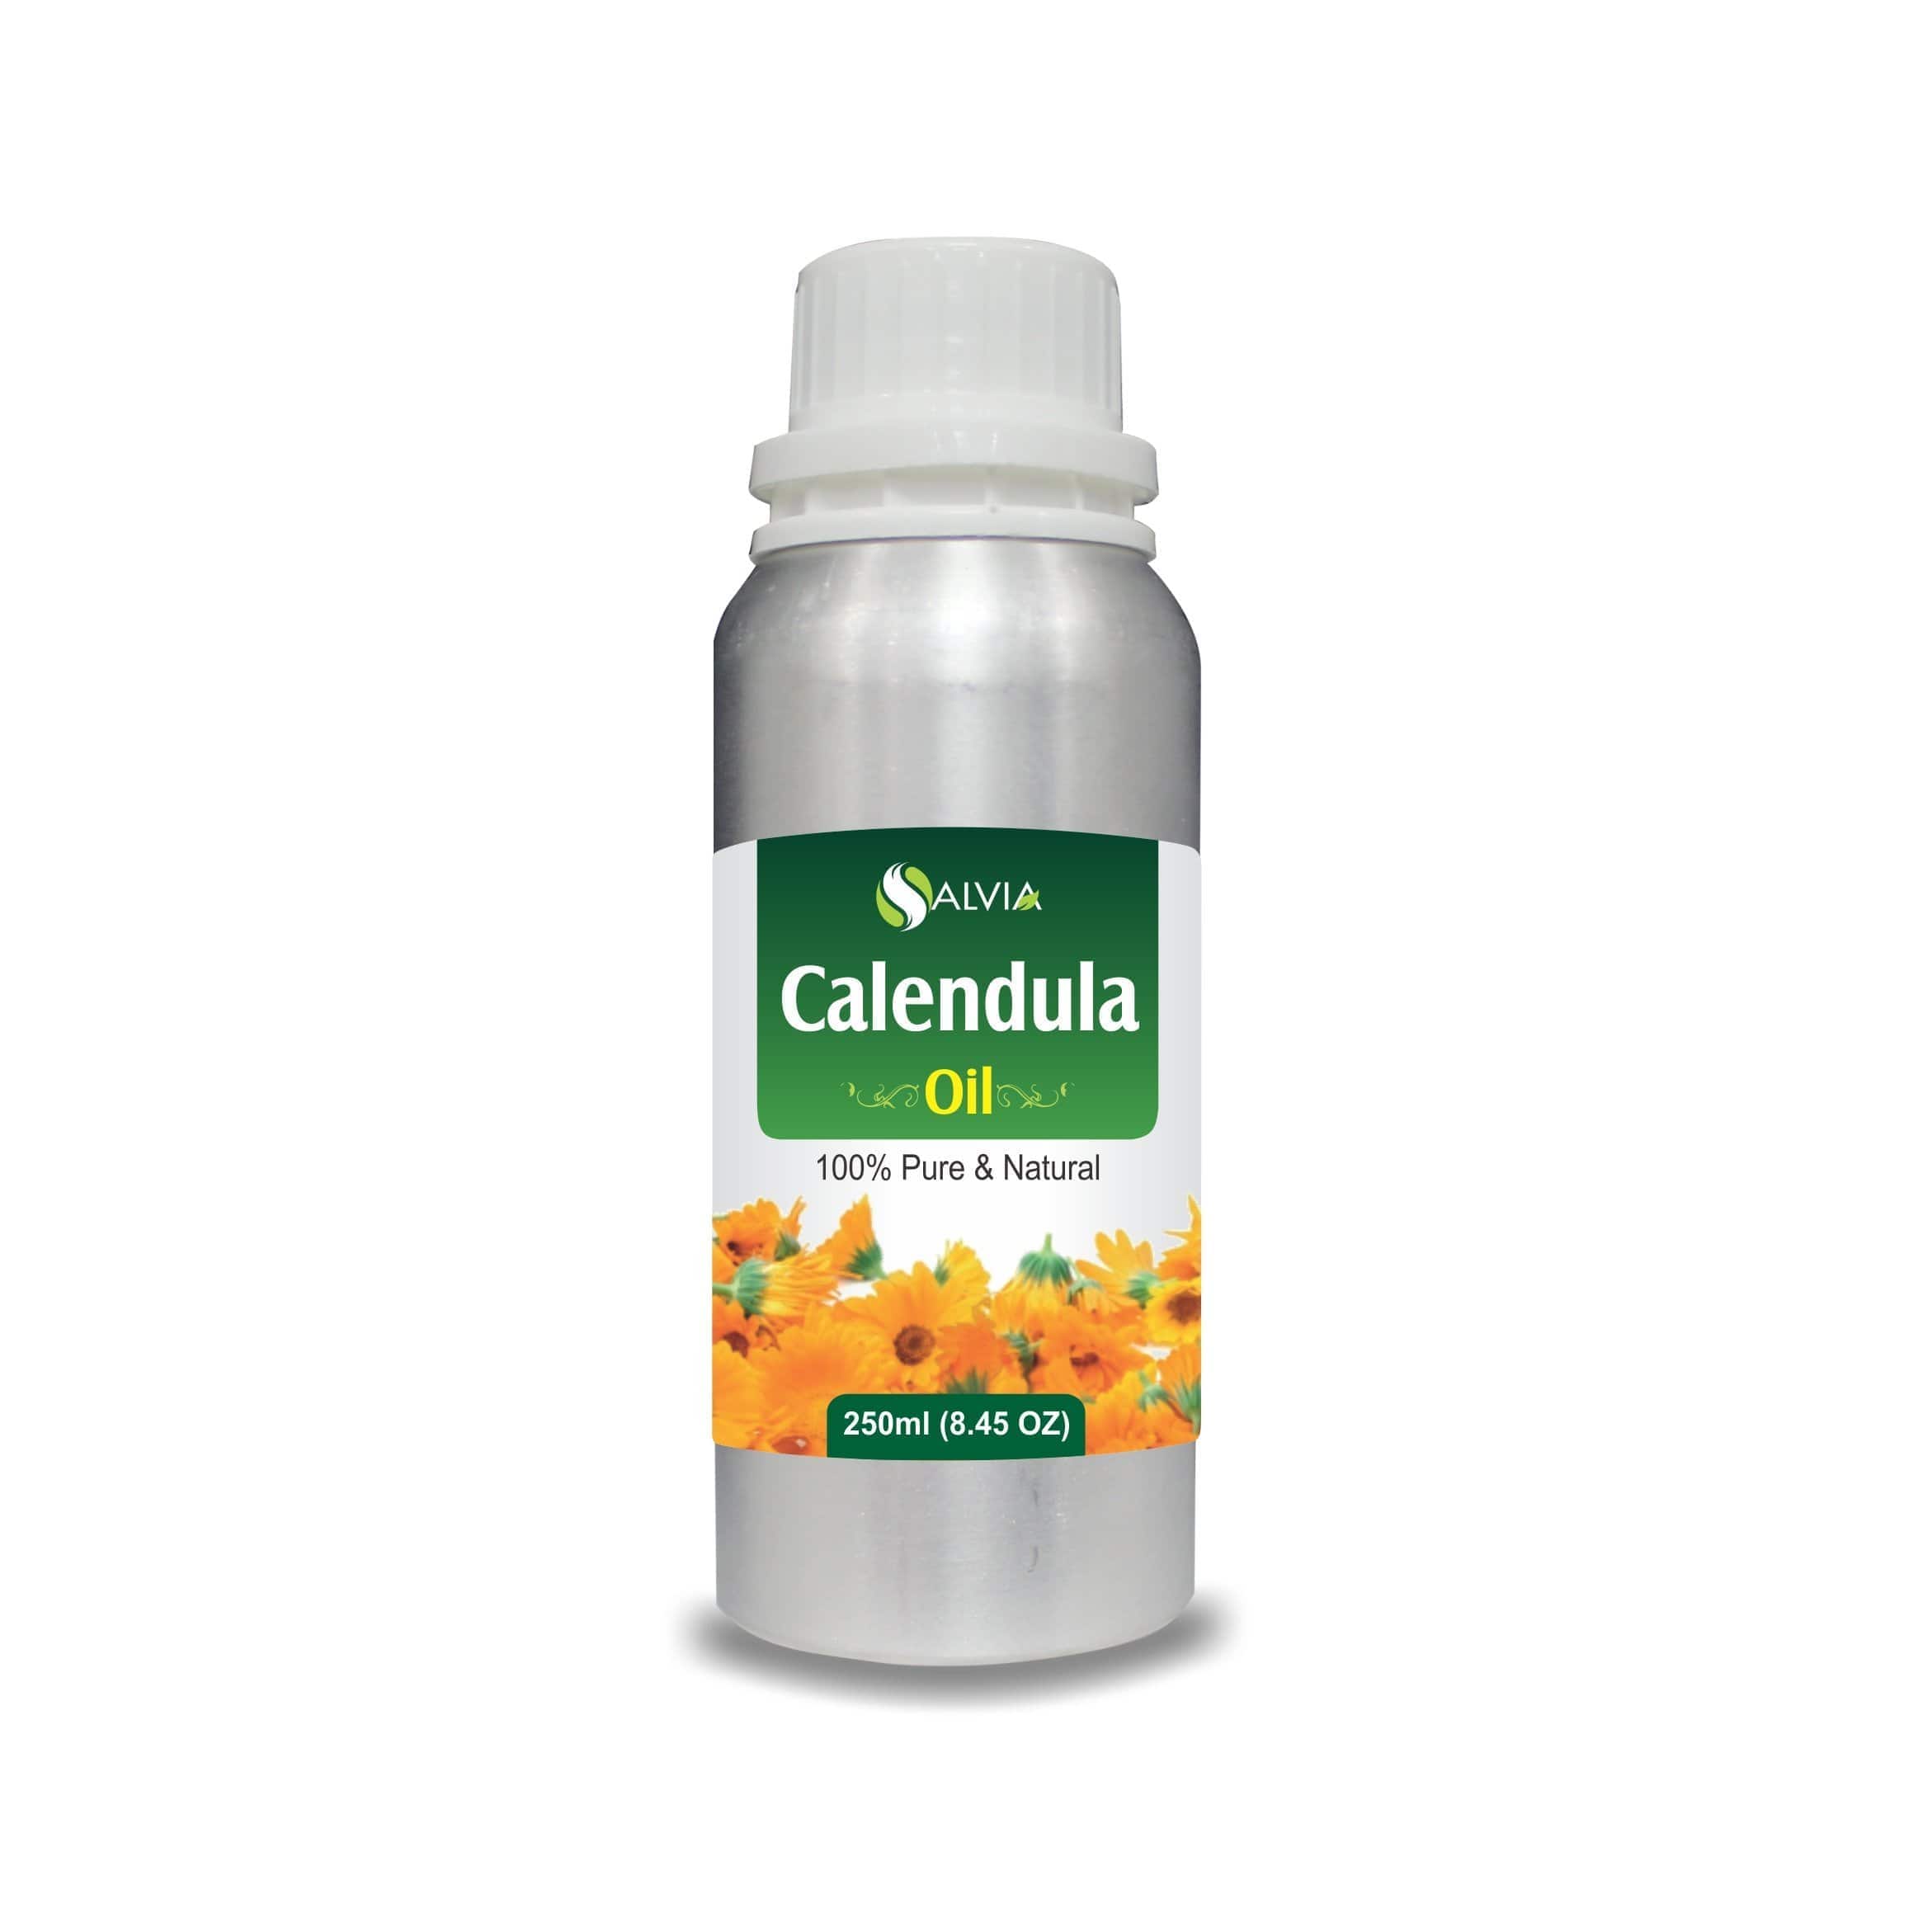 calendula oil uses